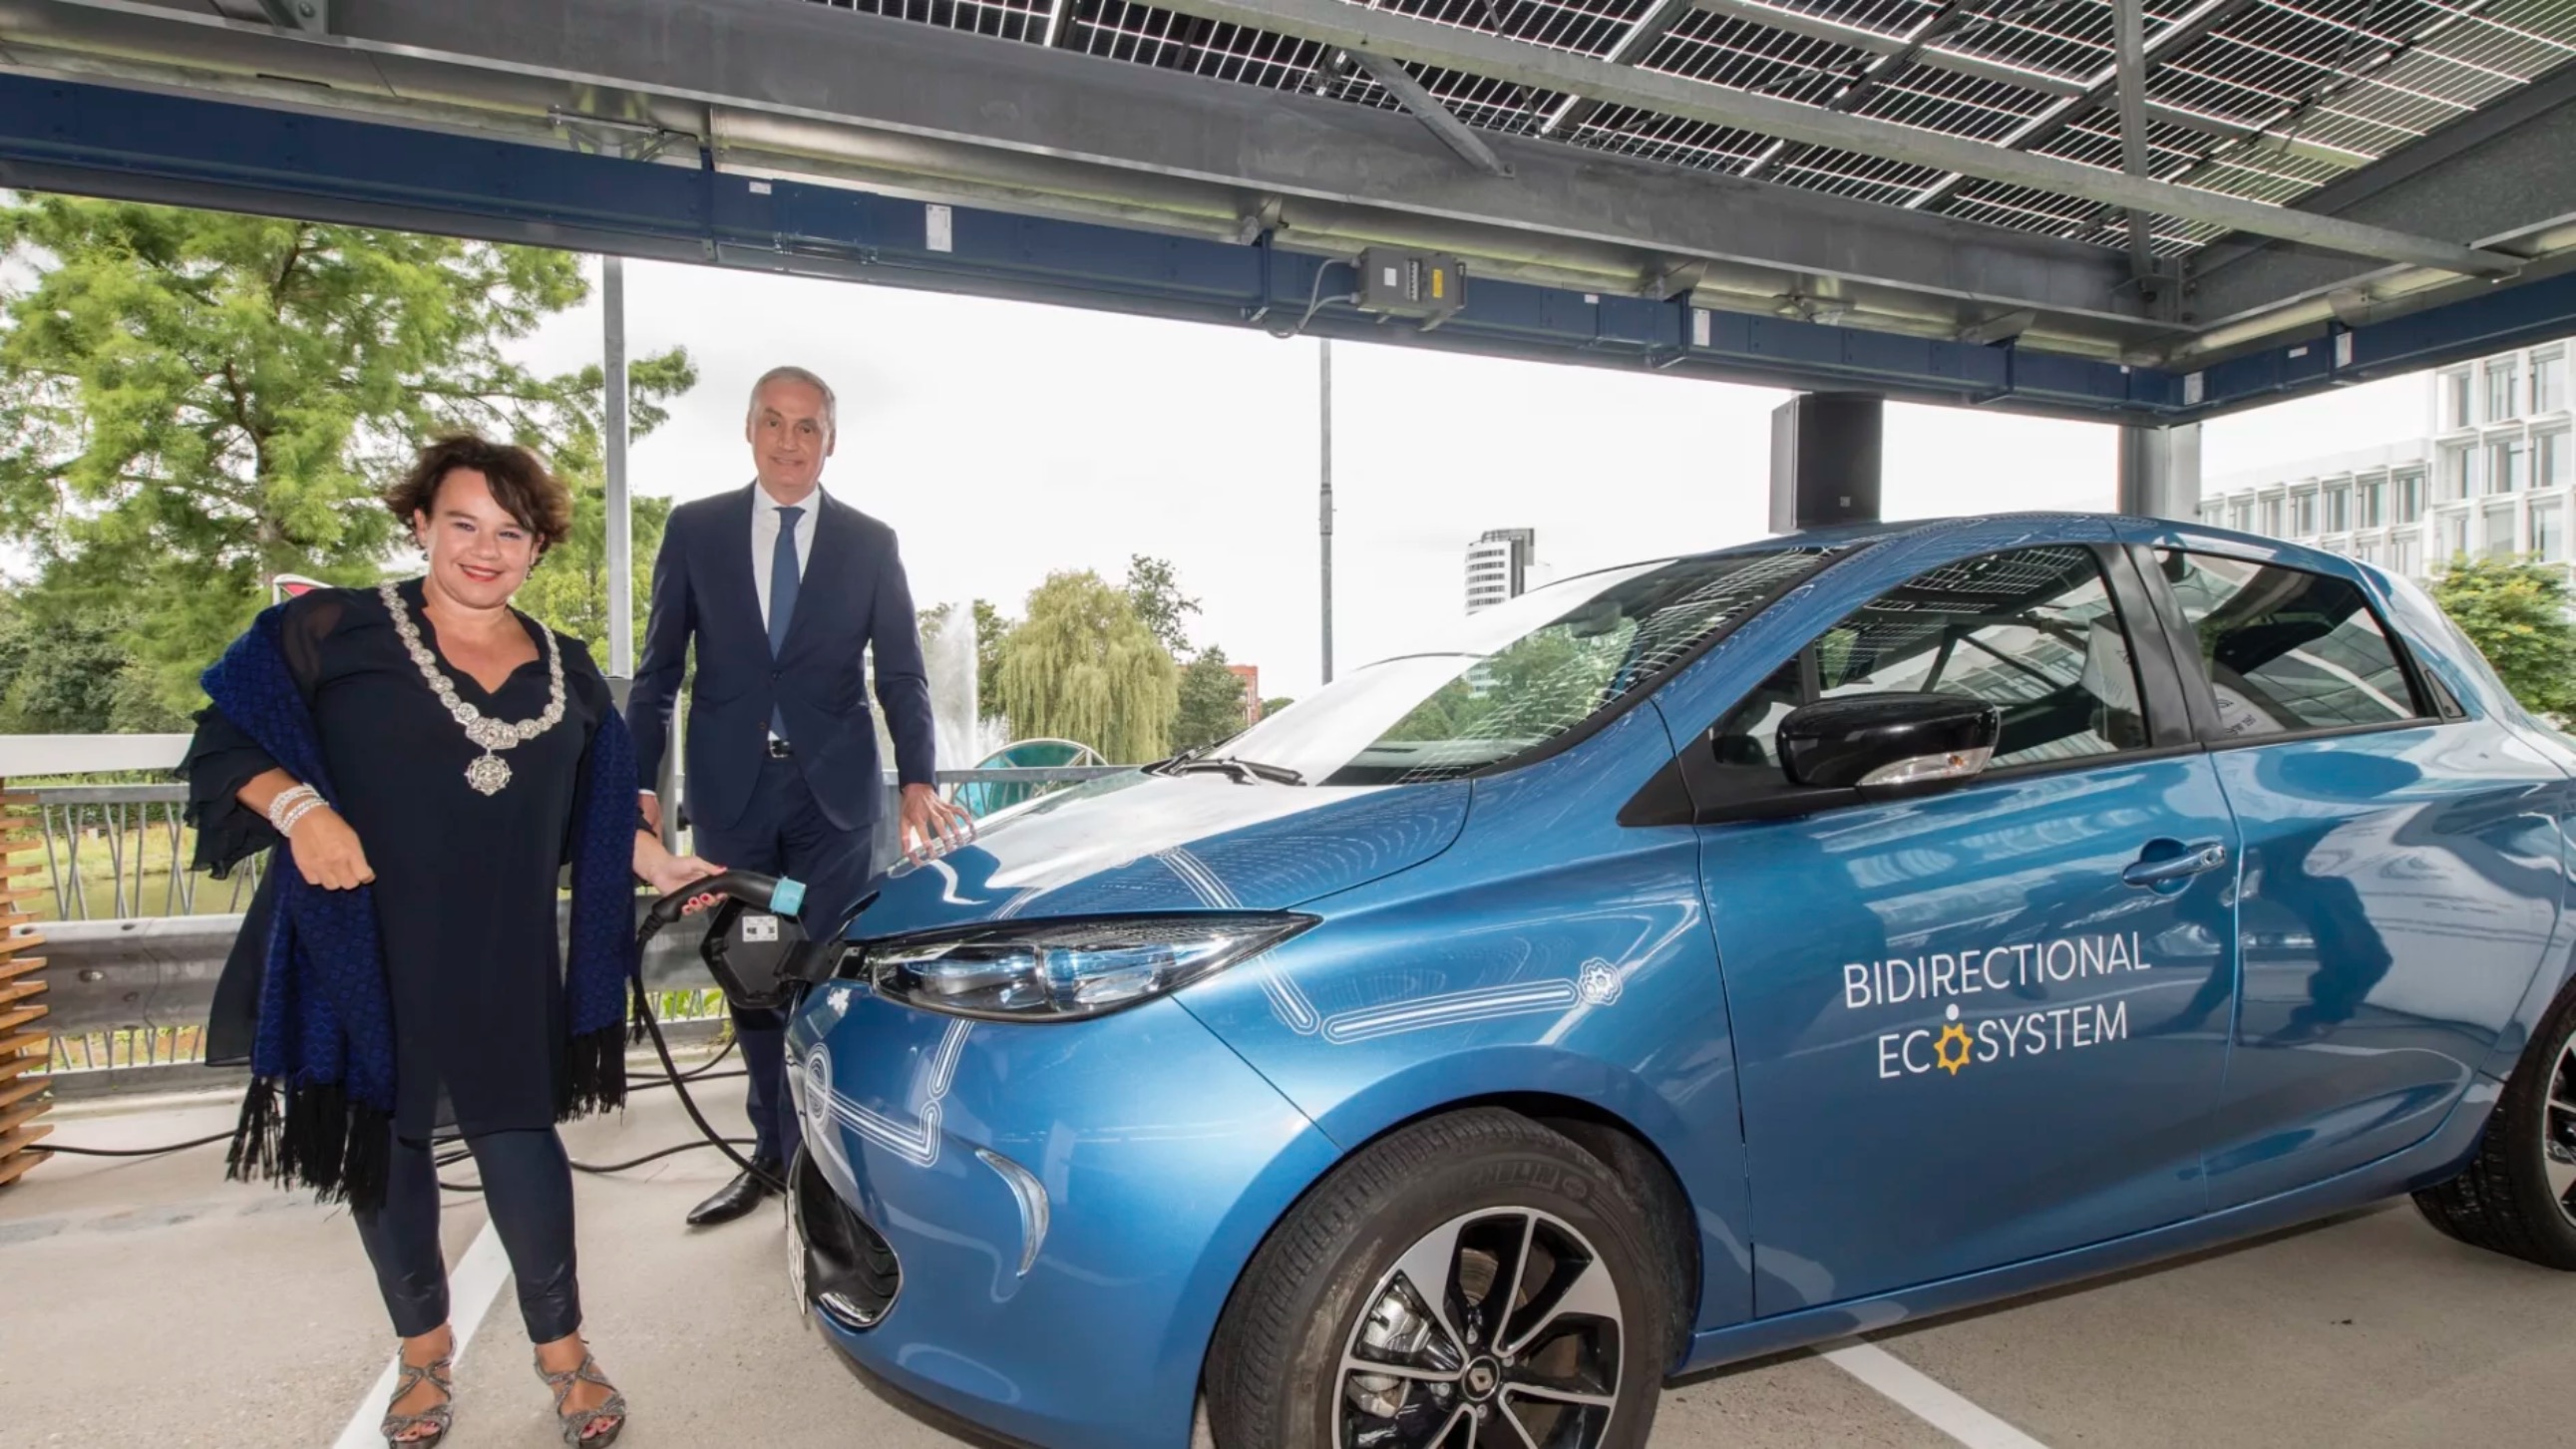 Burgemeester Dijksma en CEO Baeten plugden de eerste bidirectionele auto in de parkeergarage. Credit: a.s.r.